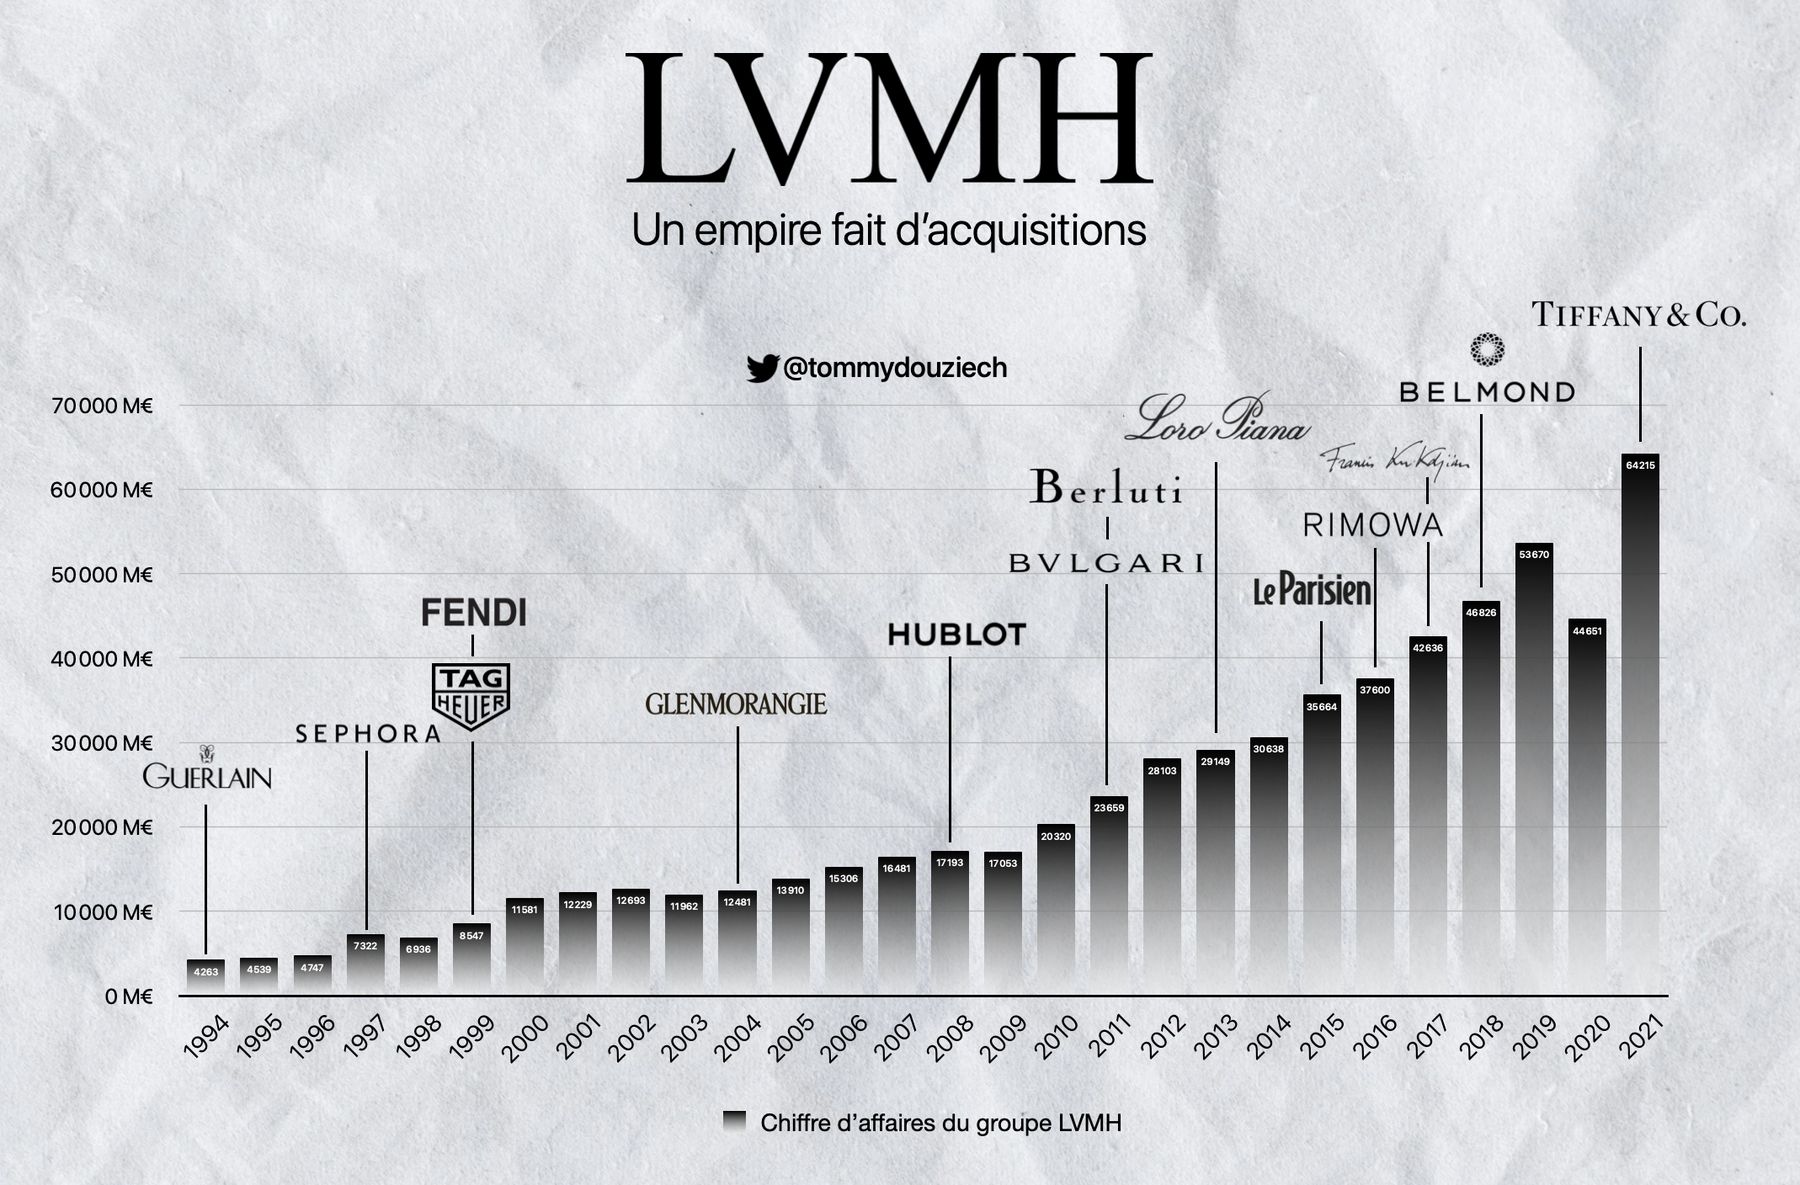 El imperio de Bernard Arnault: el modelo de negocio del grupo LVMH